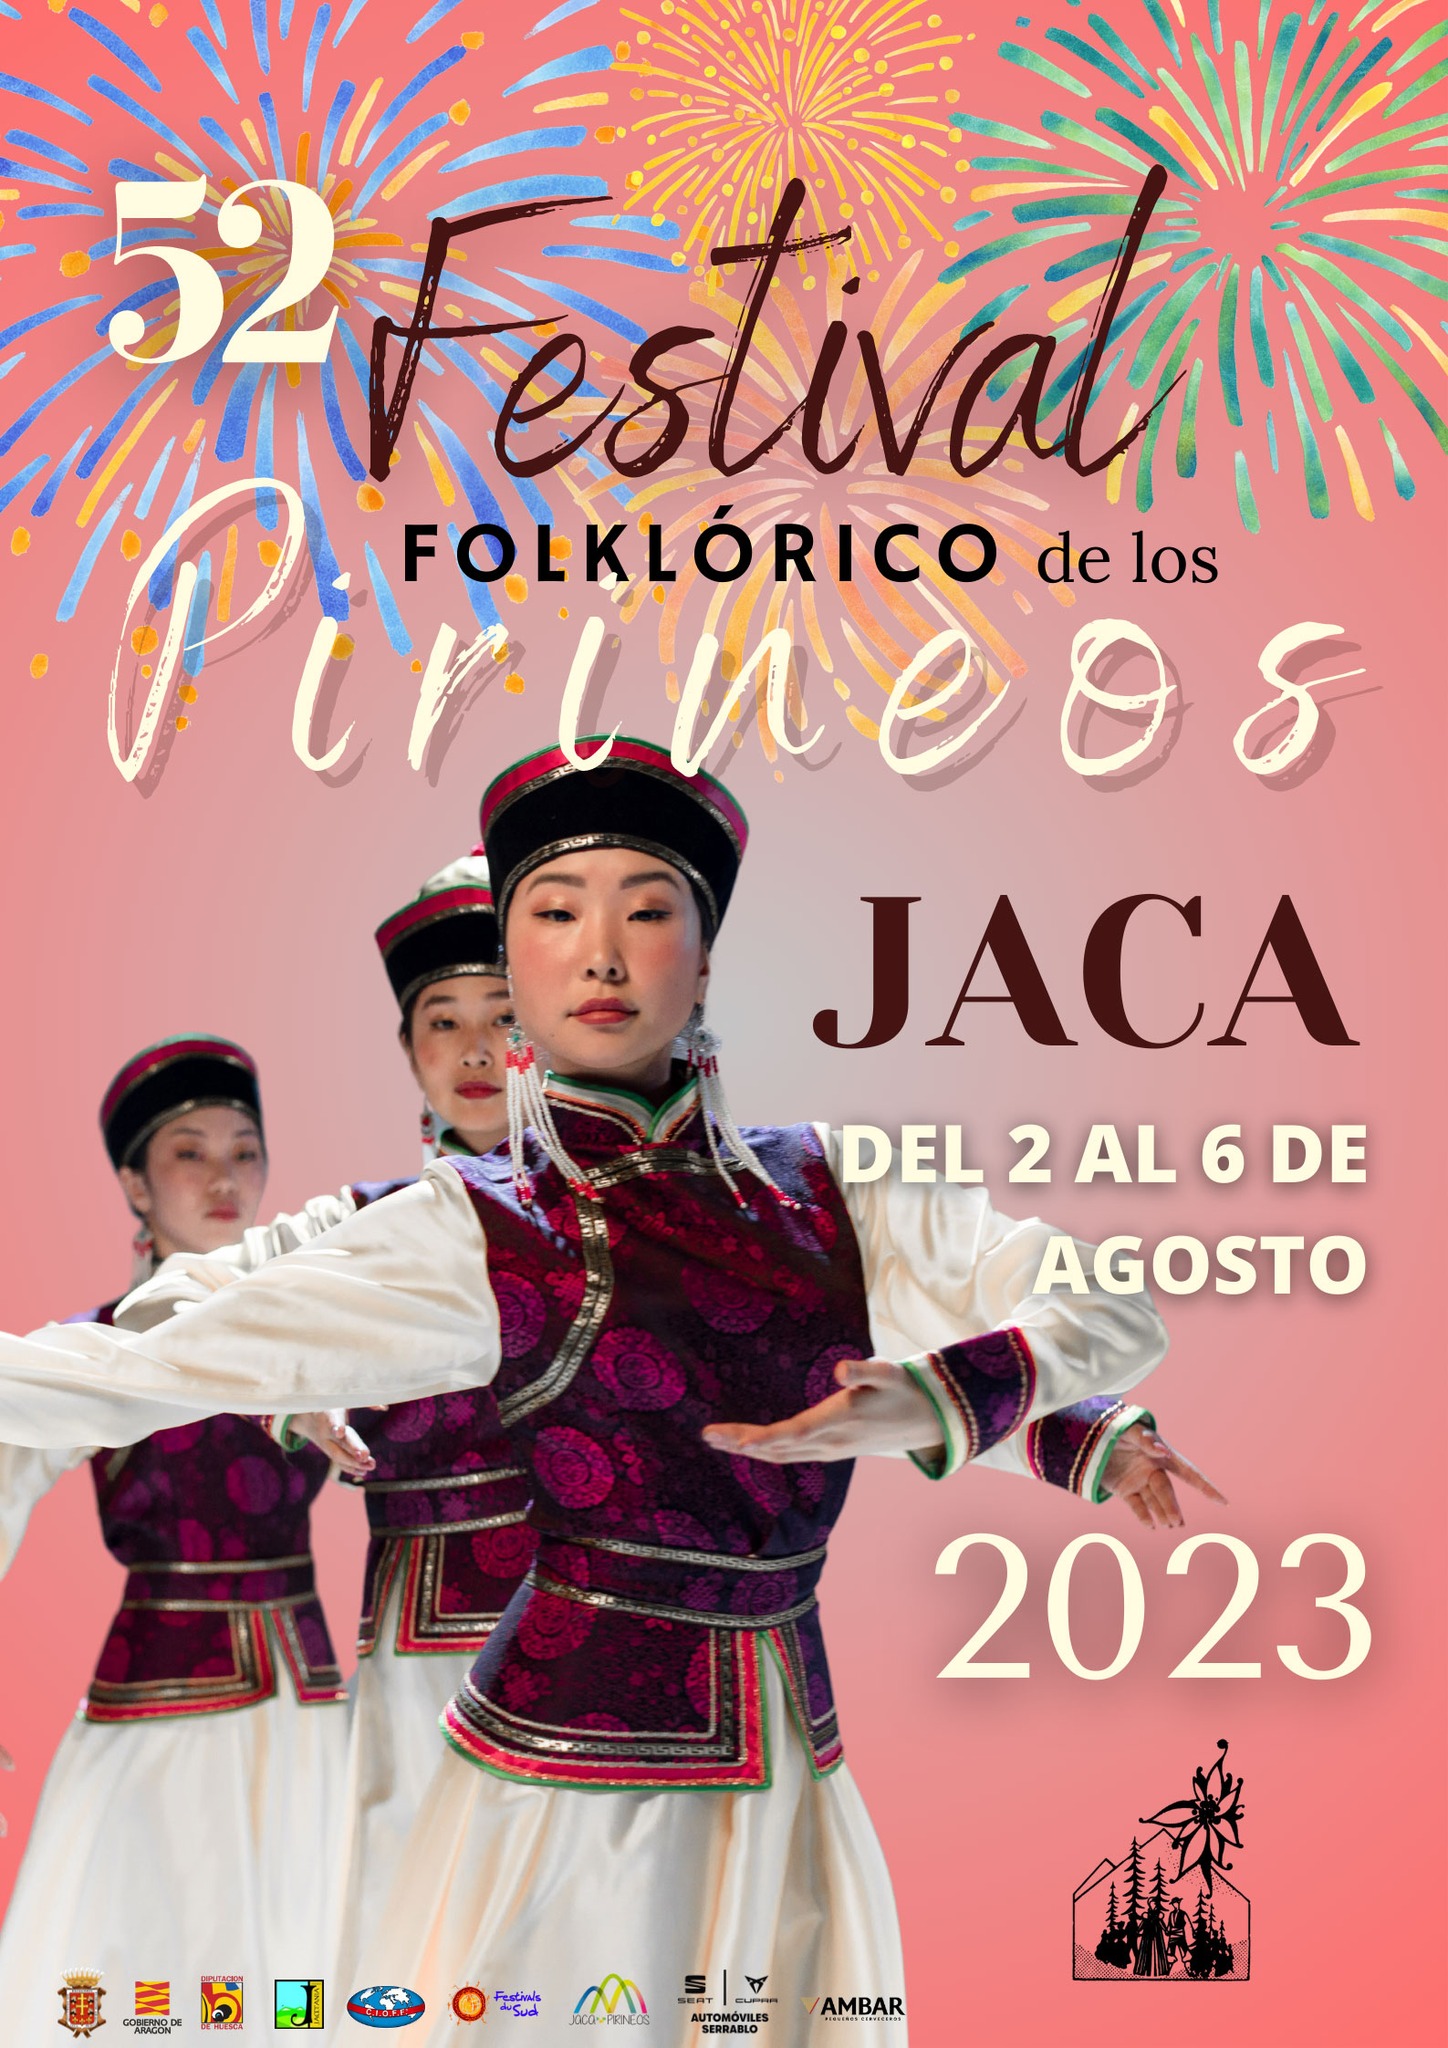 Jaca celebrará el 52 Festival Folklórico de los Pirineos del 2 al 6 de agosto